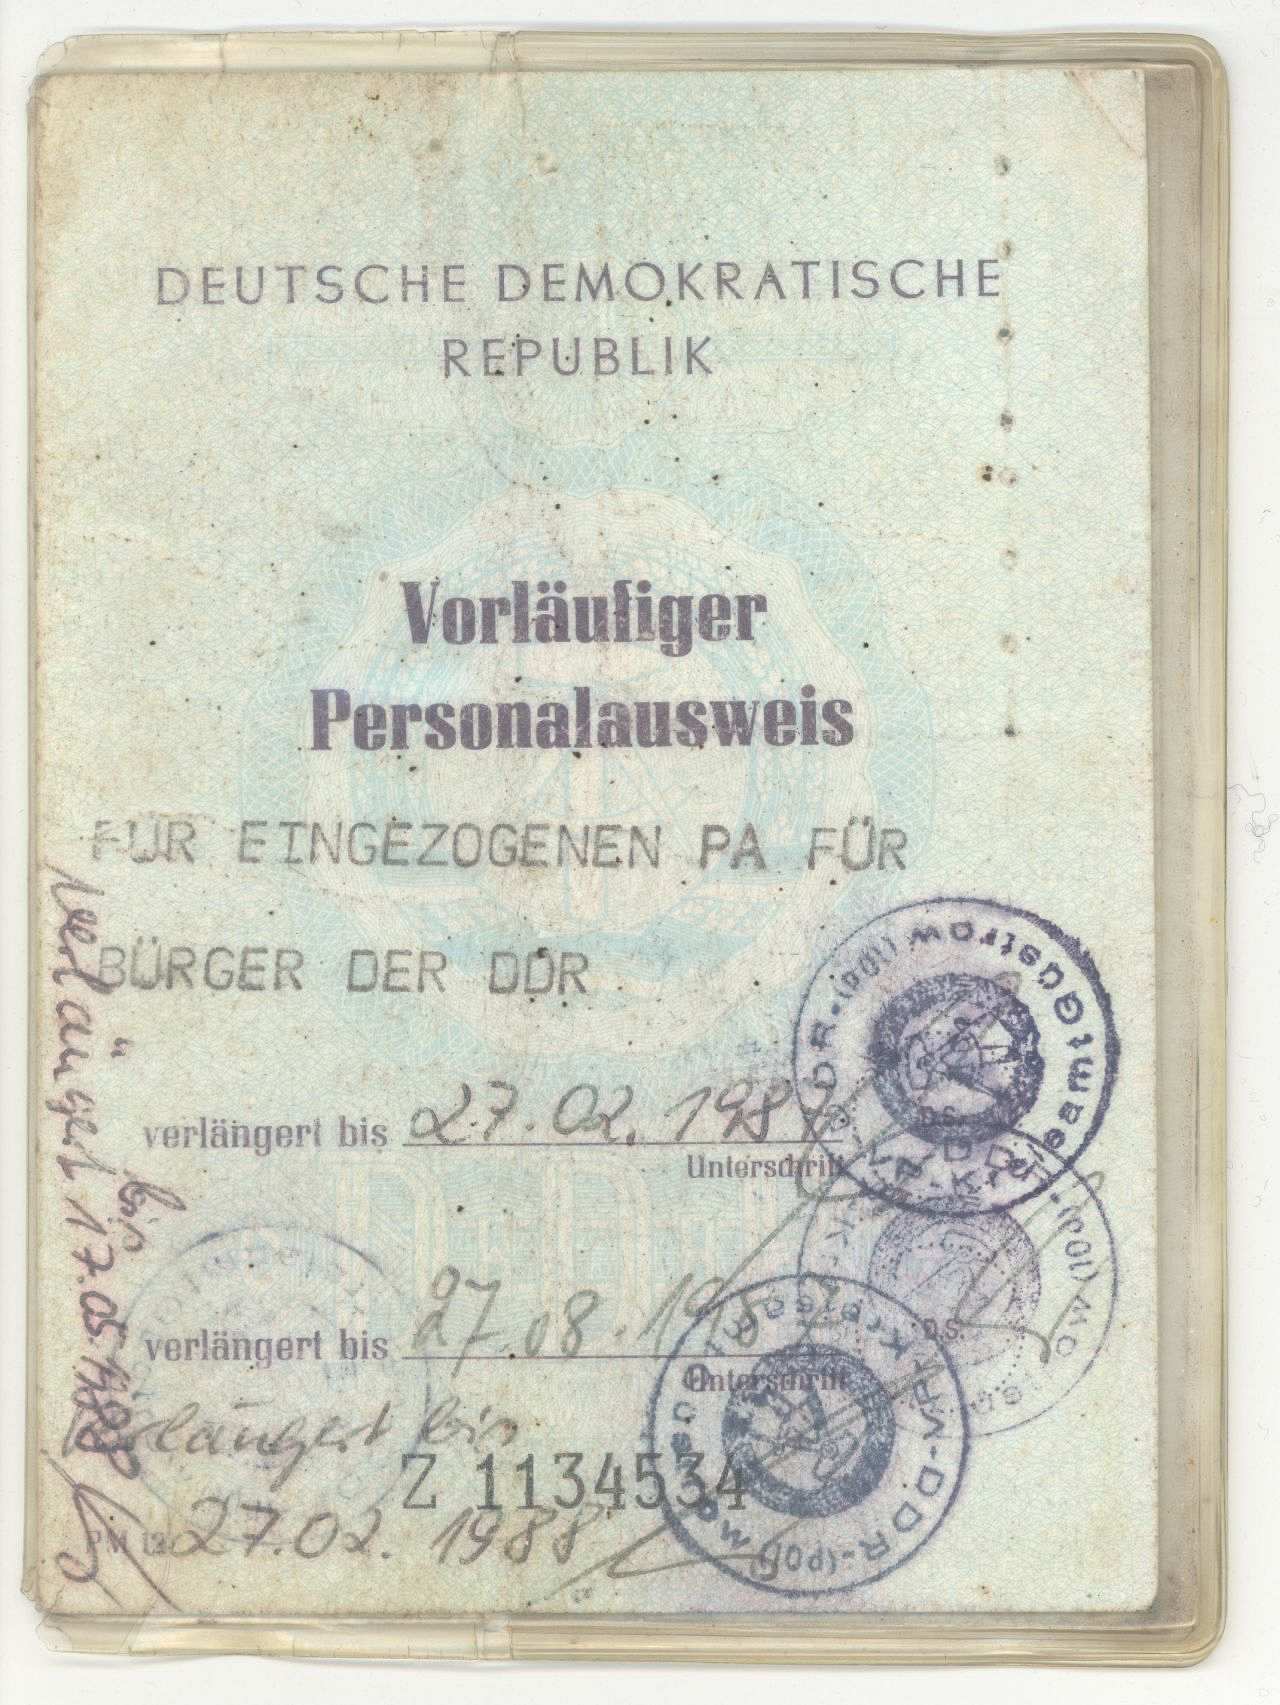 Vorläufiger Personalausweis der DDR (für den eingezogenen Ausweis).